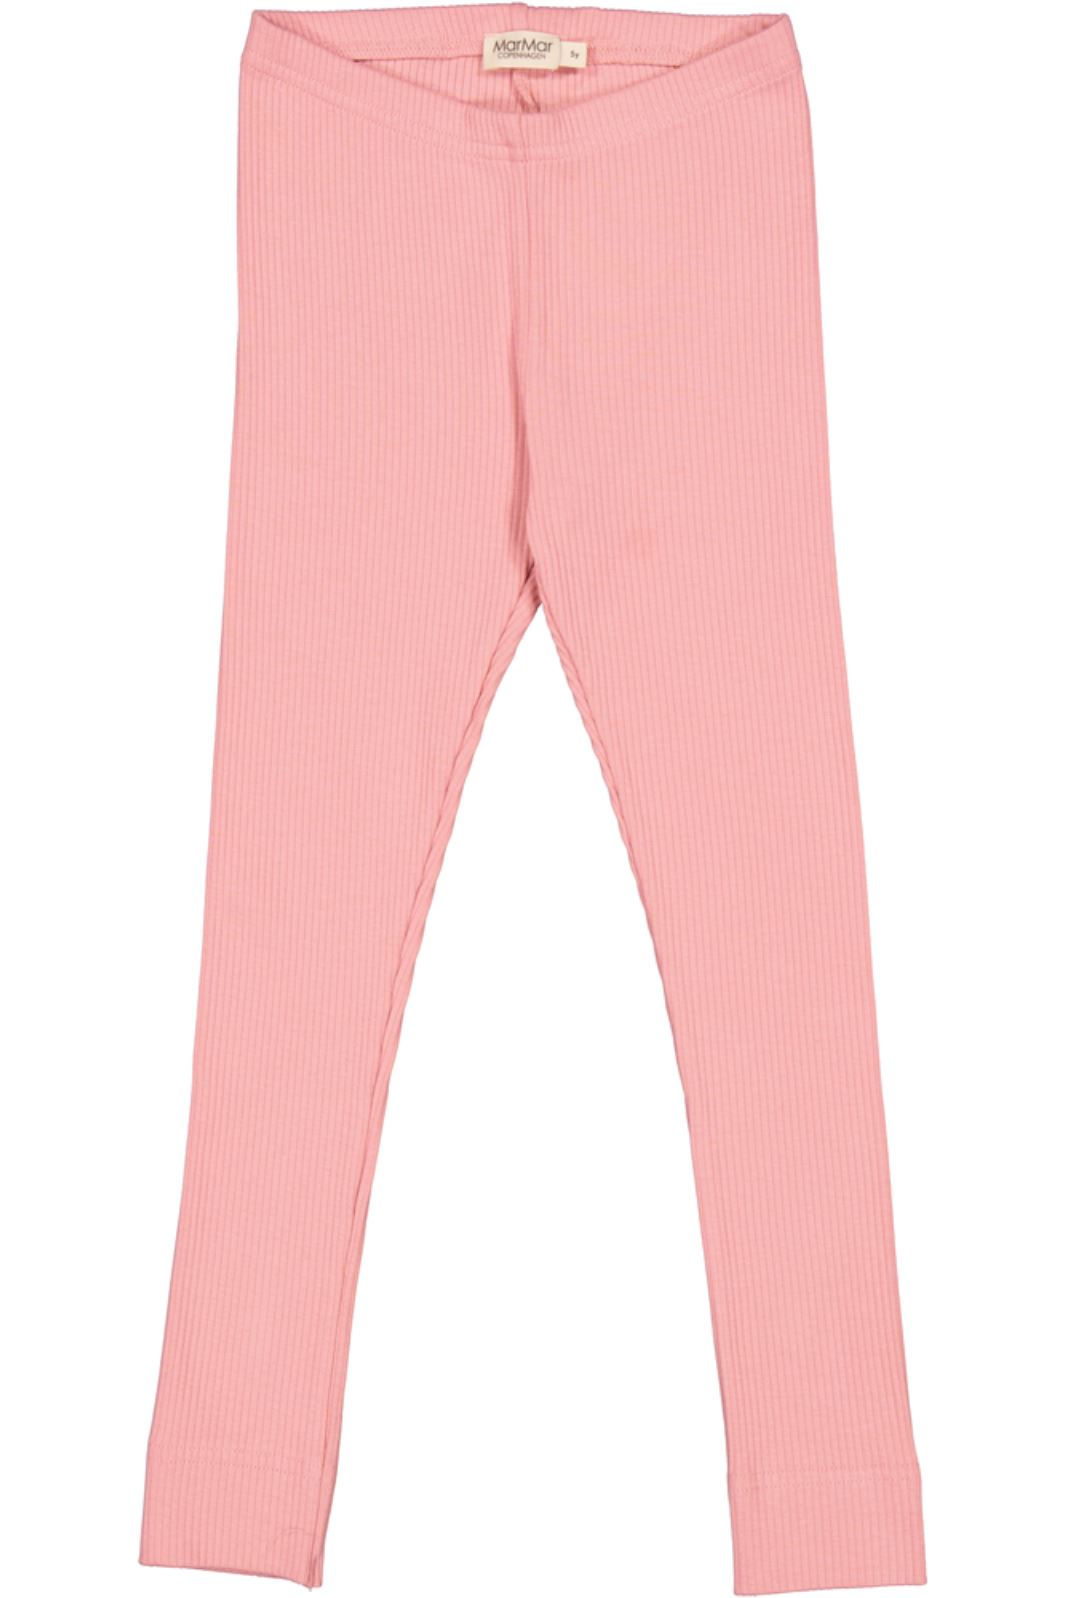 MarMar - Leg - Pink Delight - 3529 - Modal Leggings 